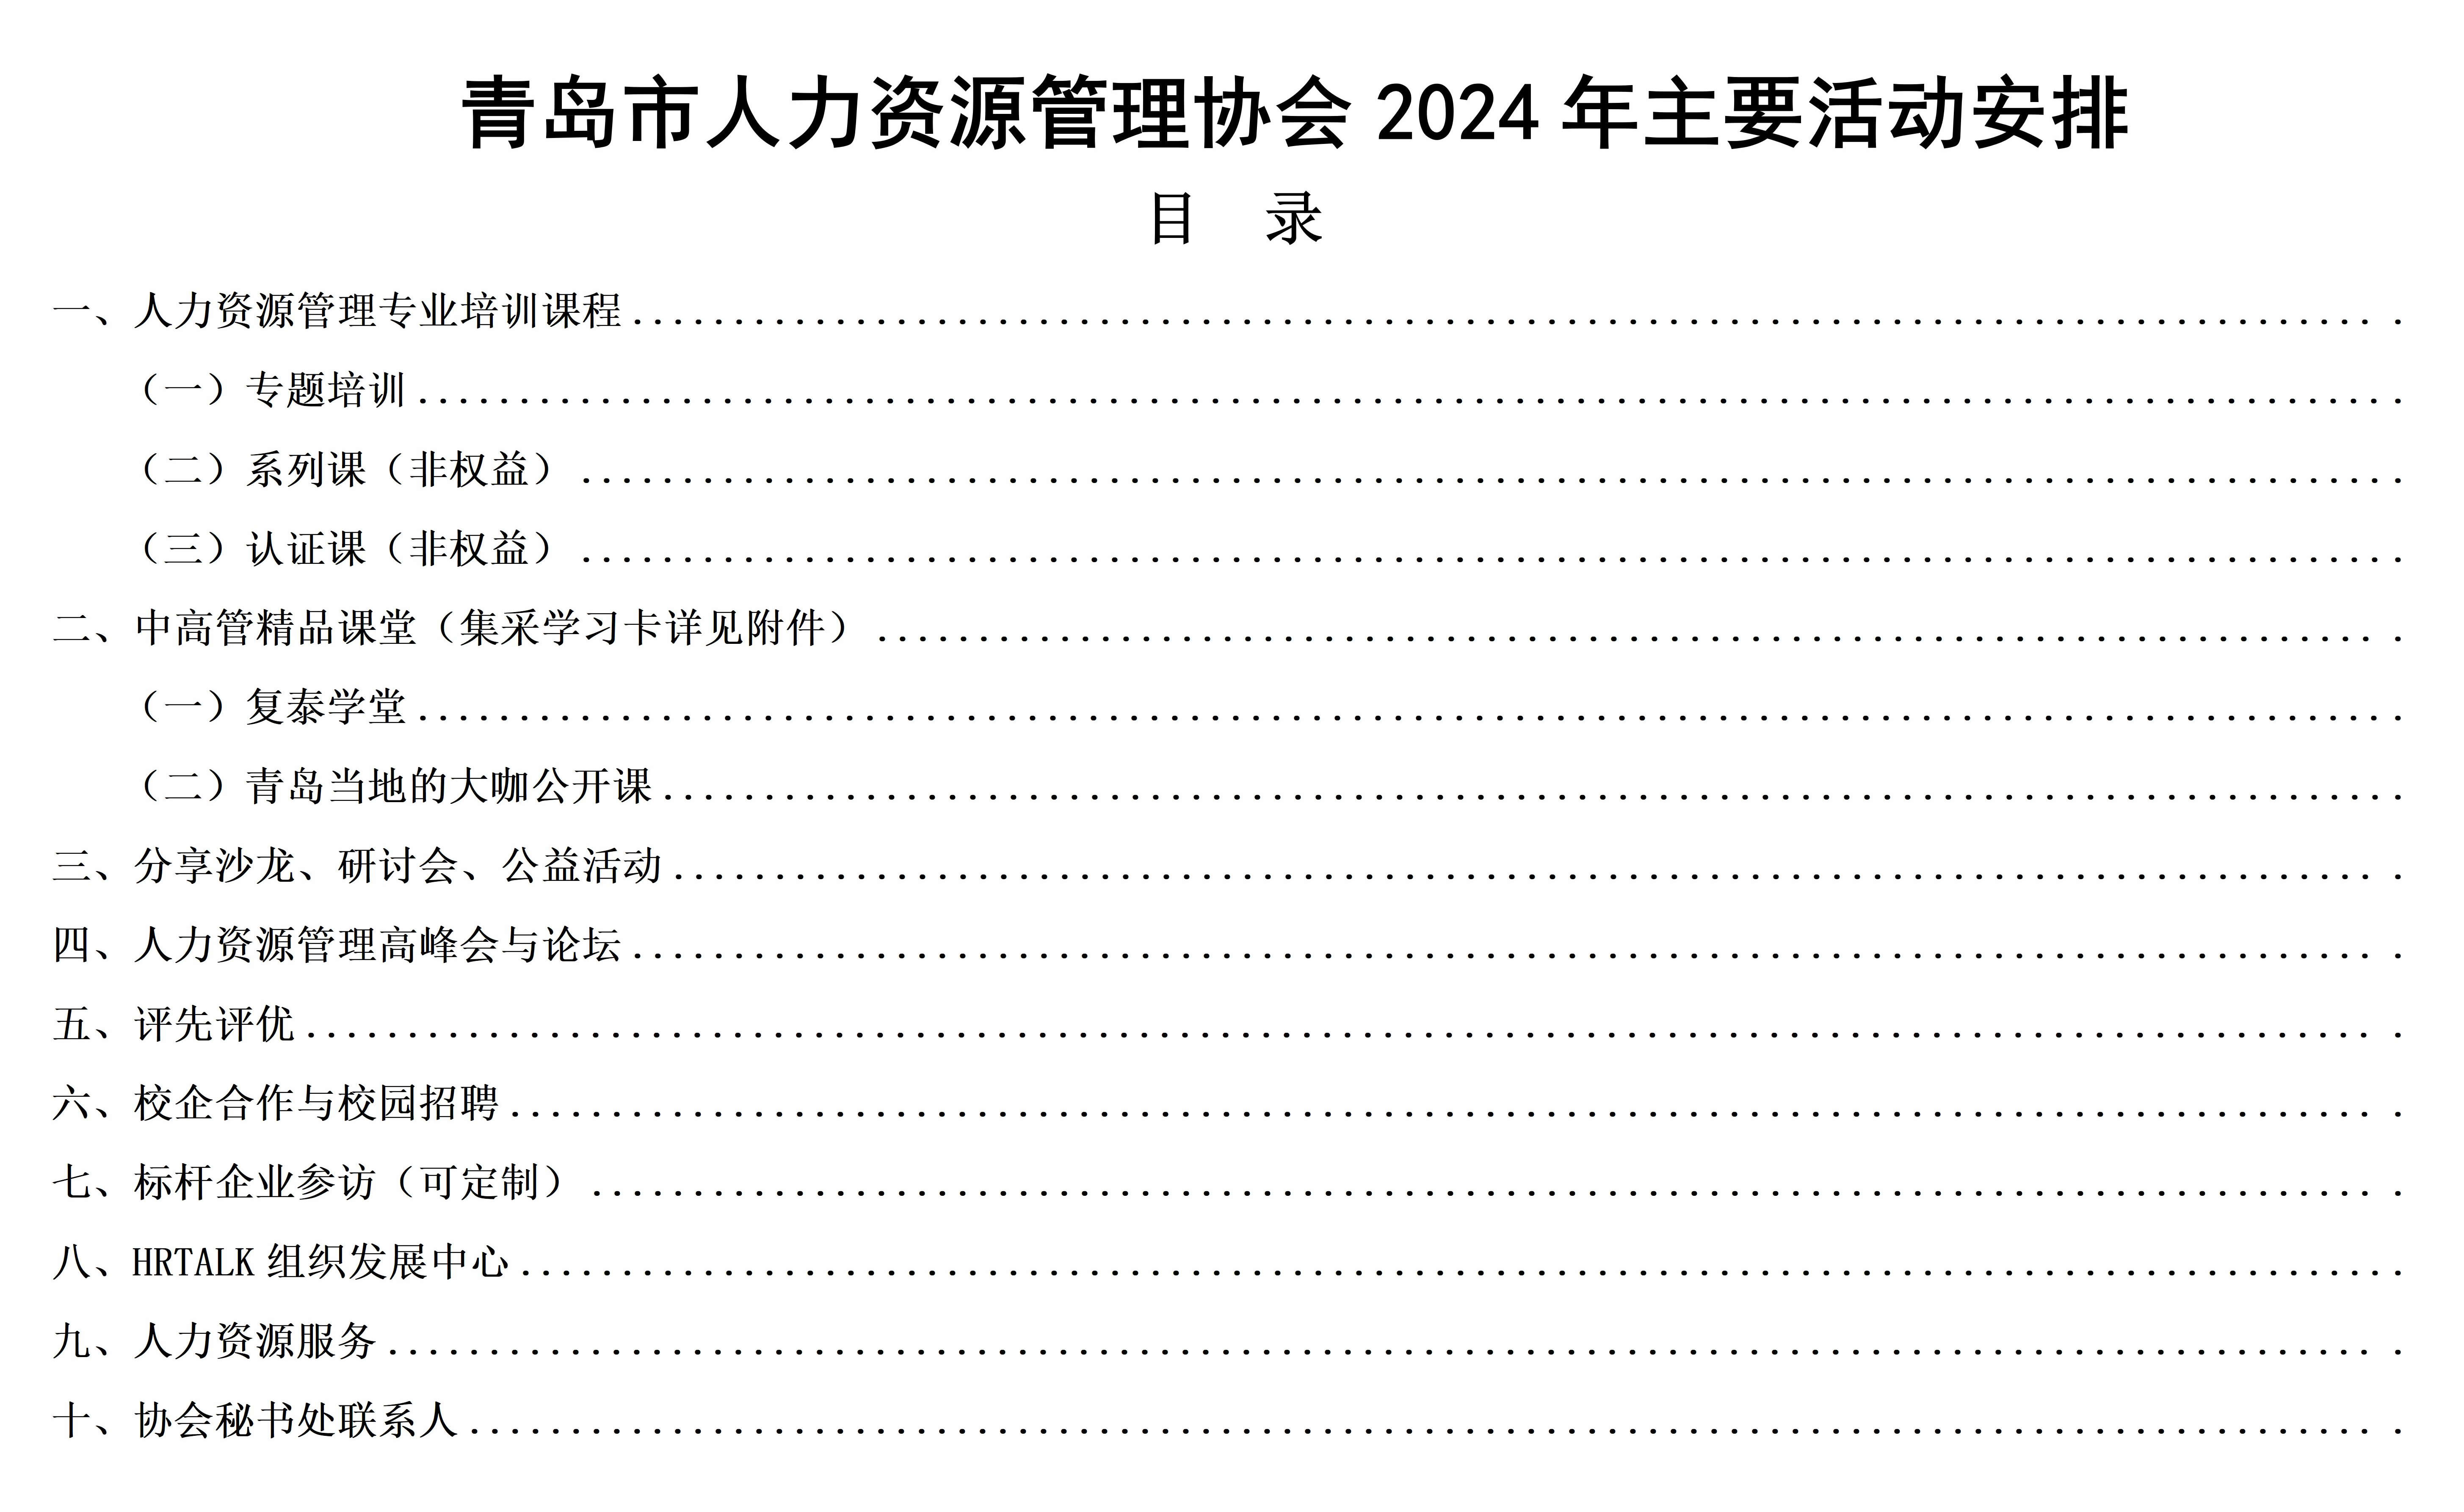 2024年主要活动安排(图1)